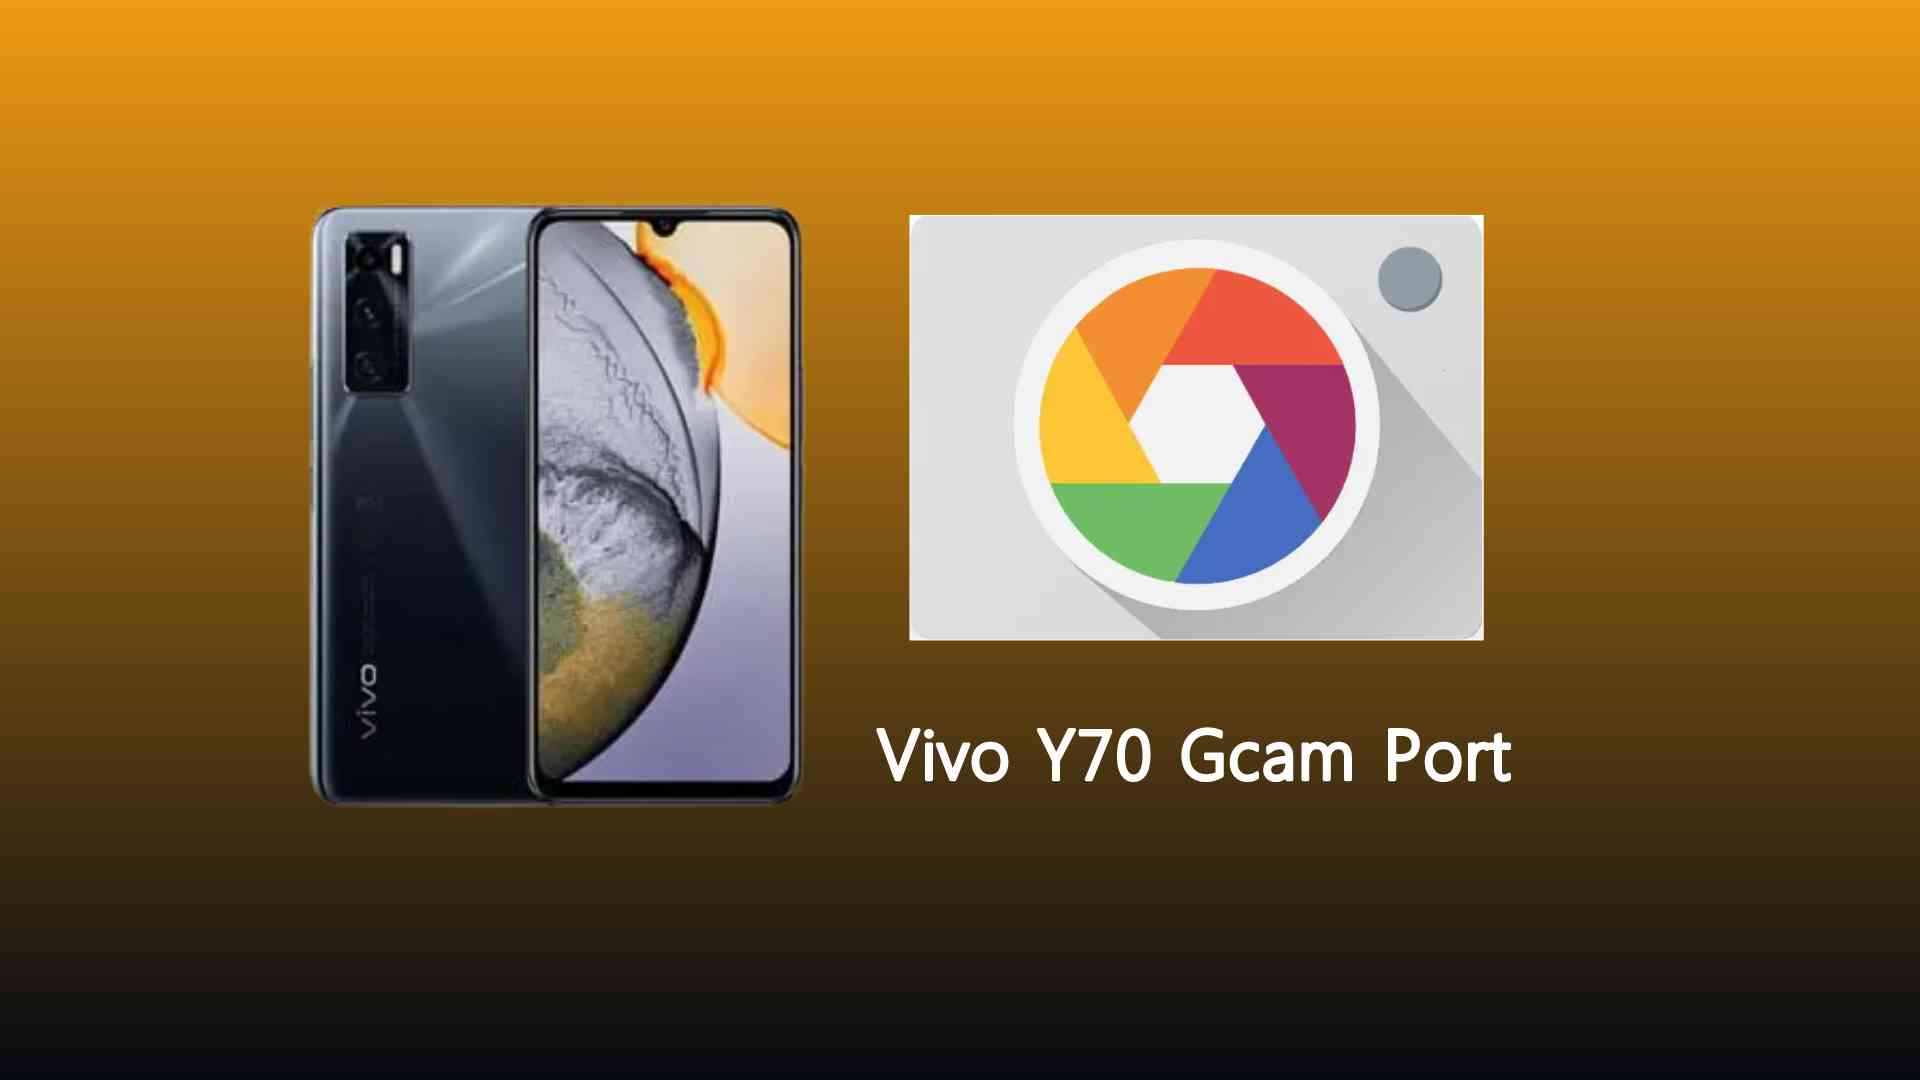 Vivo Y70 Gcam Port